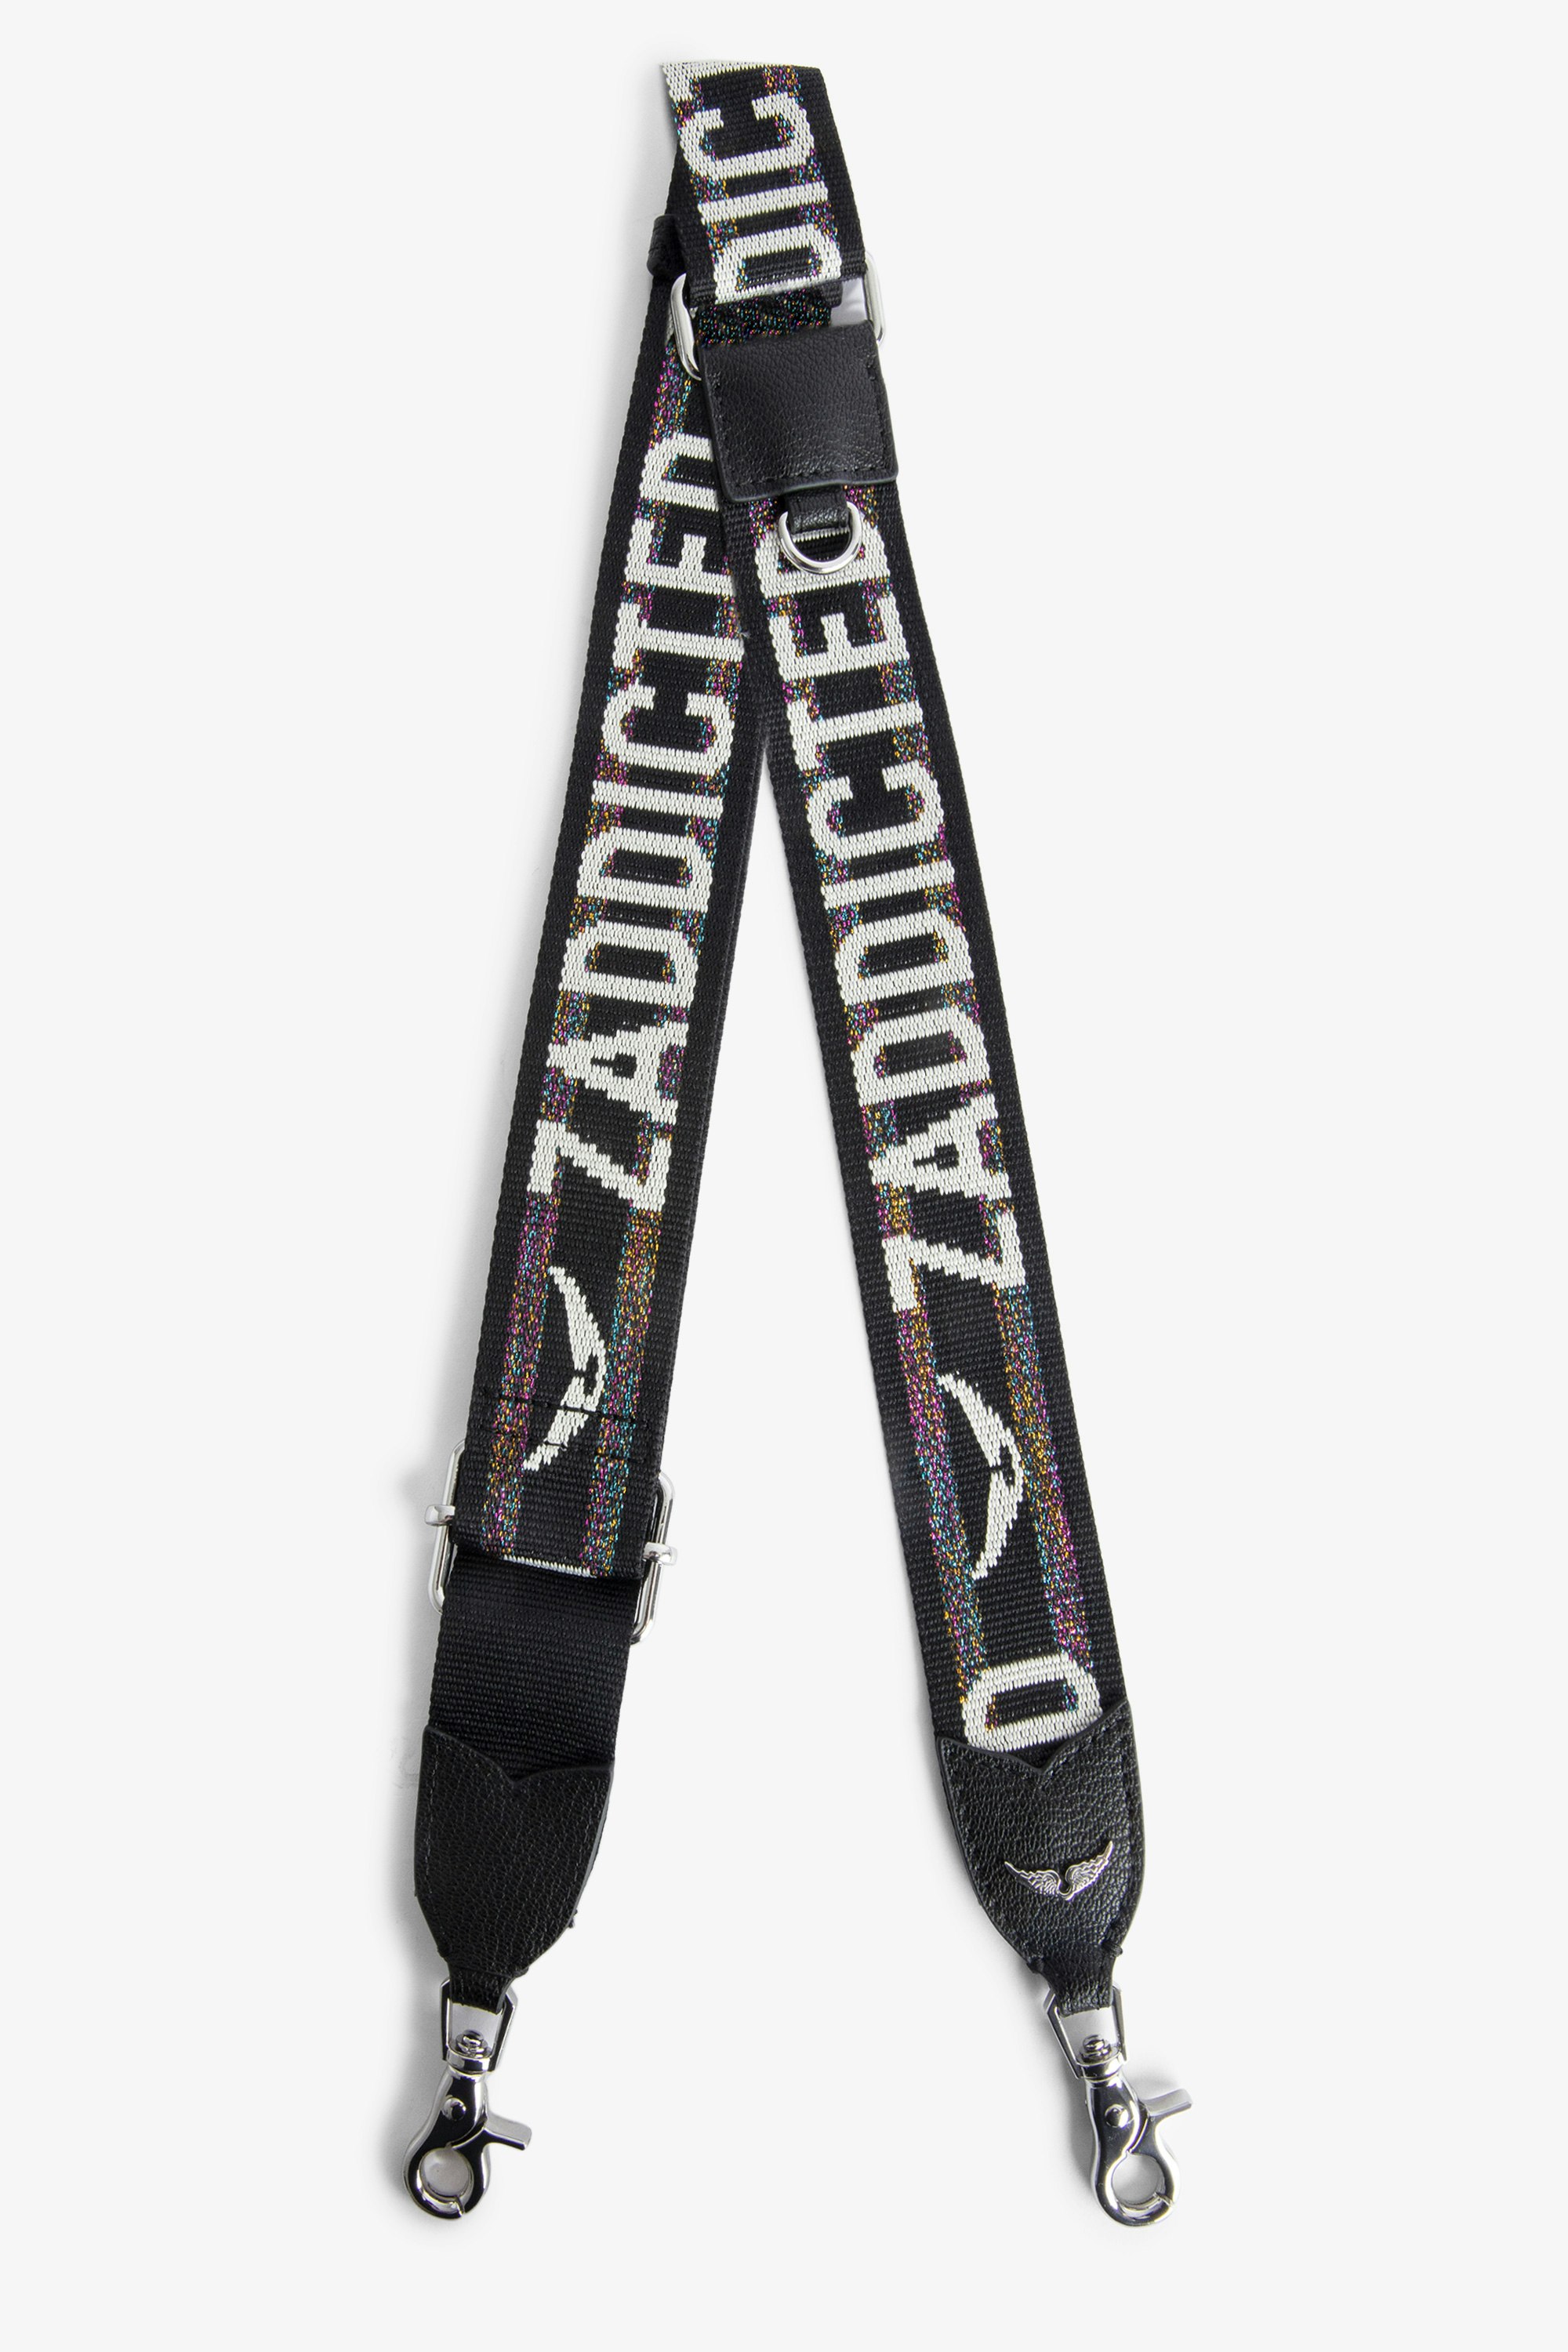 Zadig Shoulder Strap - “Zaddicted” glitter nylon adjustable shoulder strap.